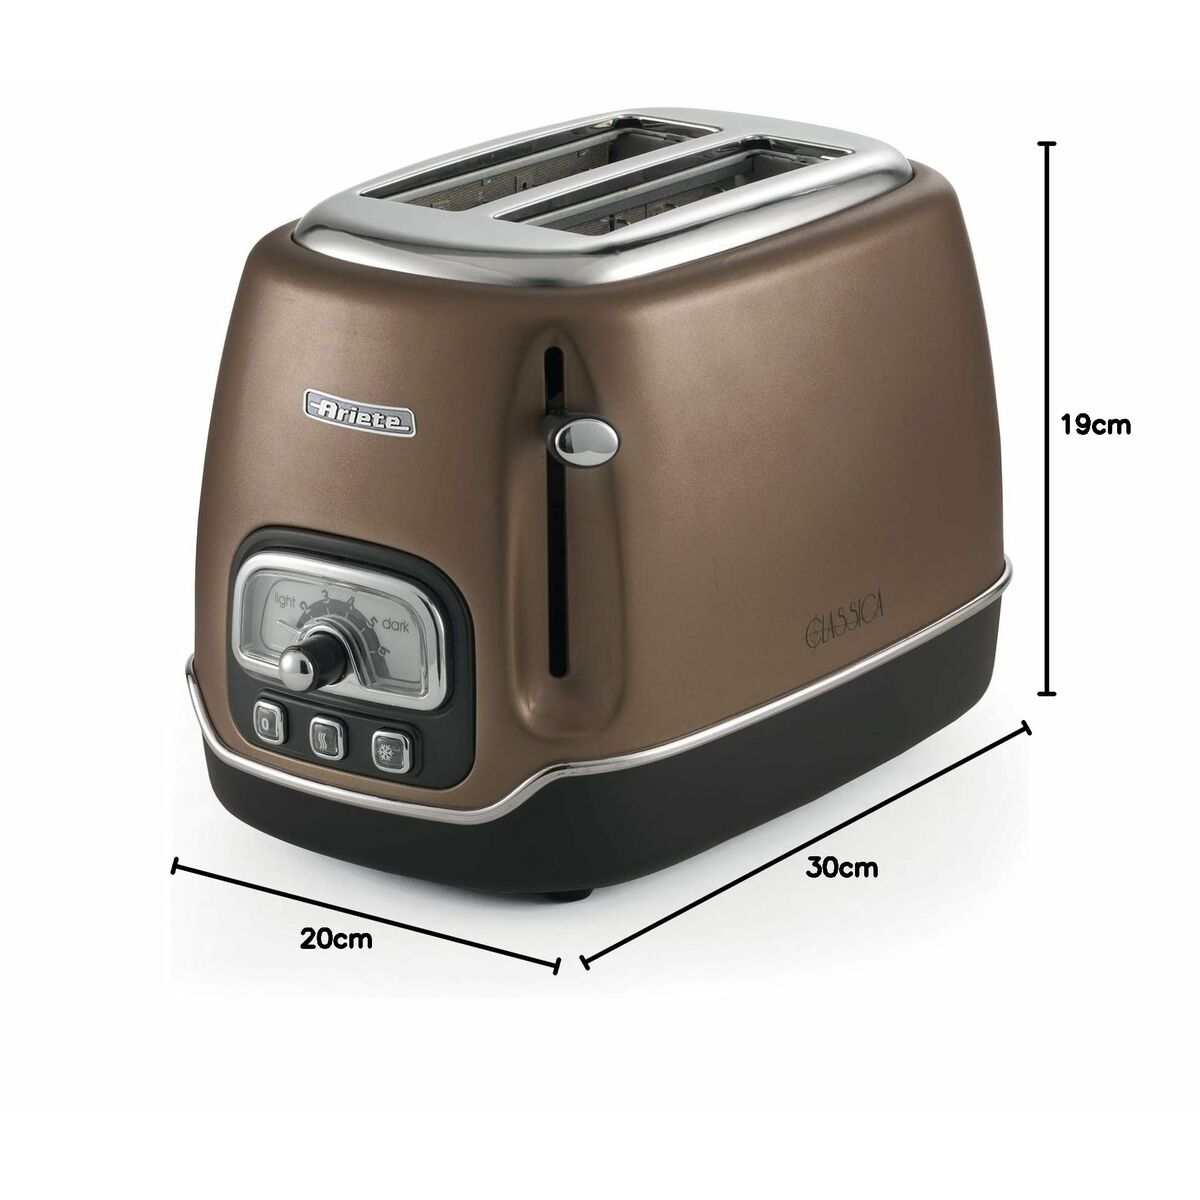 Kaufe Toaster Ariete Classica 815 W bei AWK Flagship um € 72.00